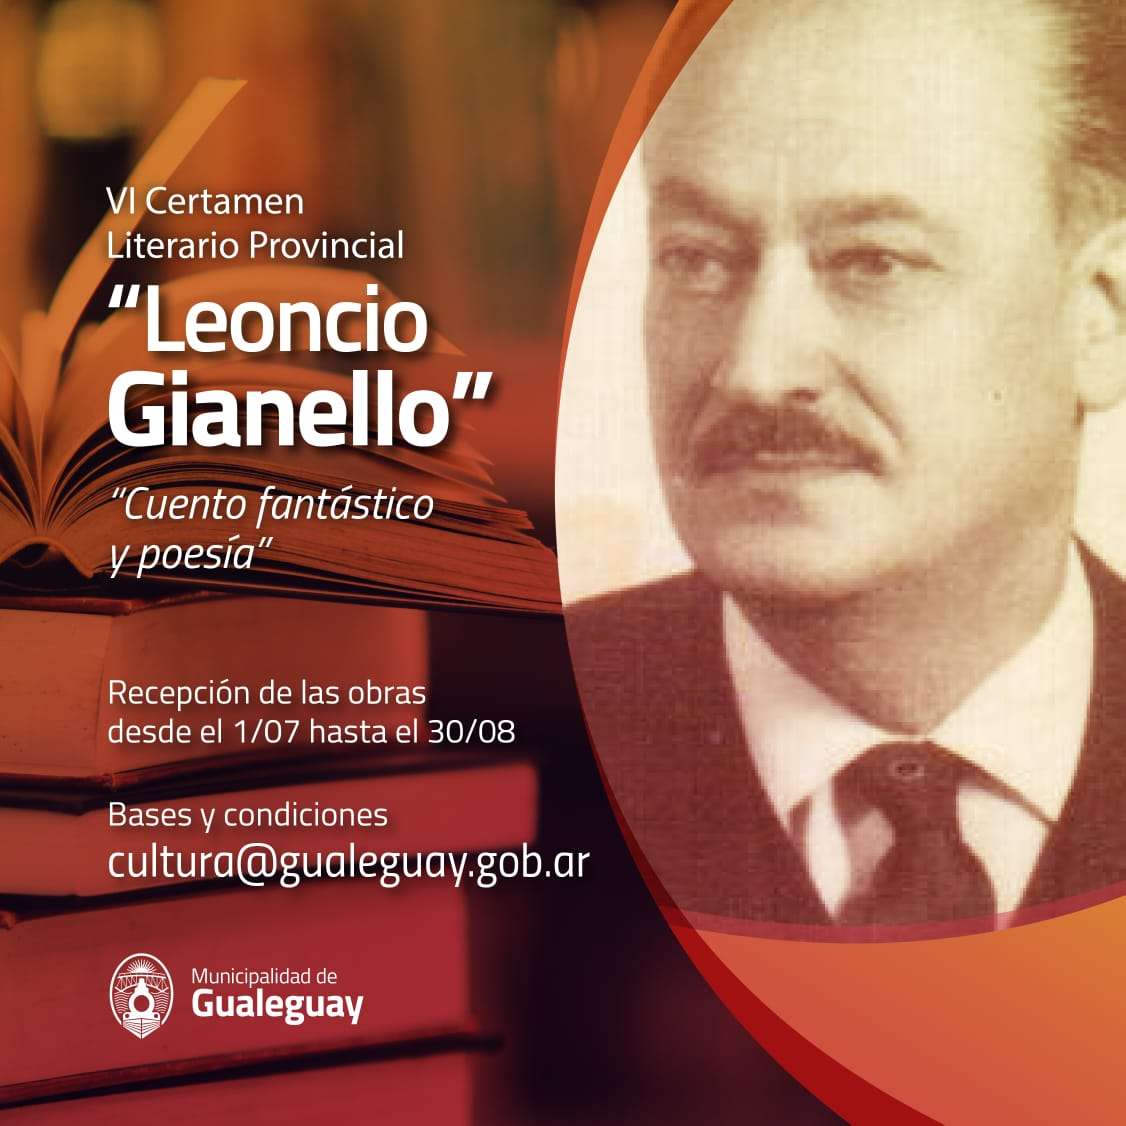 VI Certamen Literario Provincial "Leoncio Gianello"